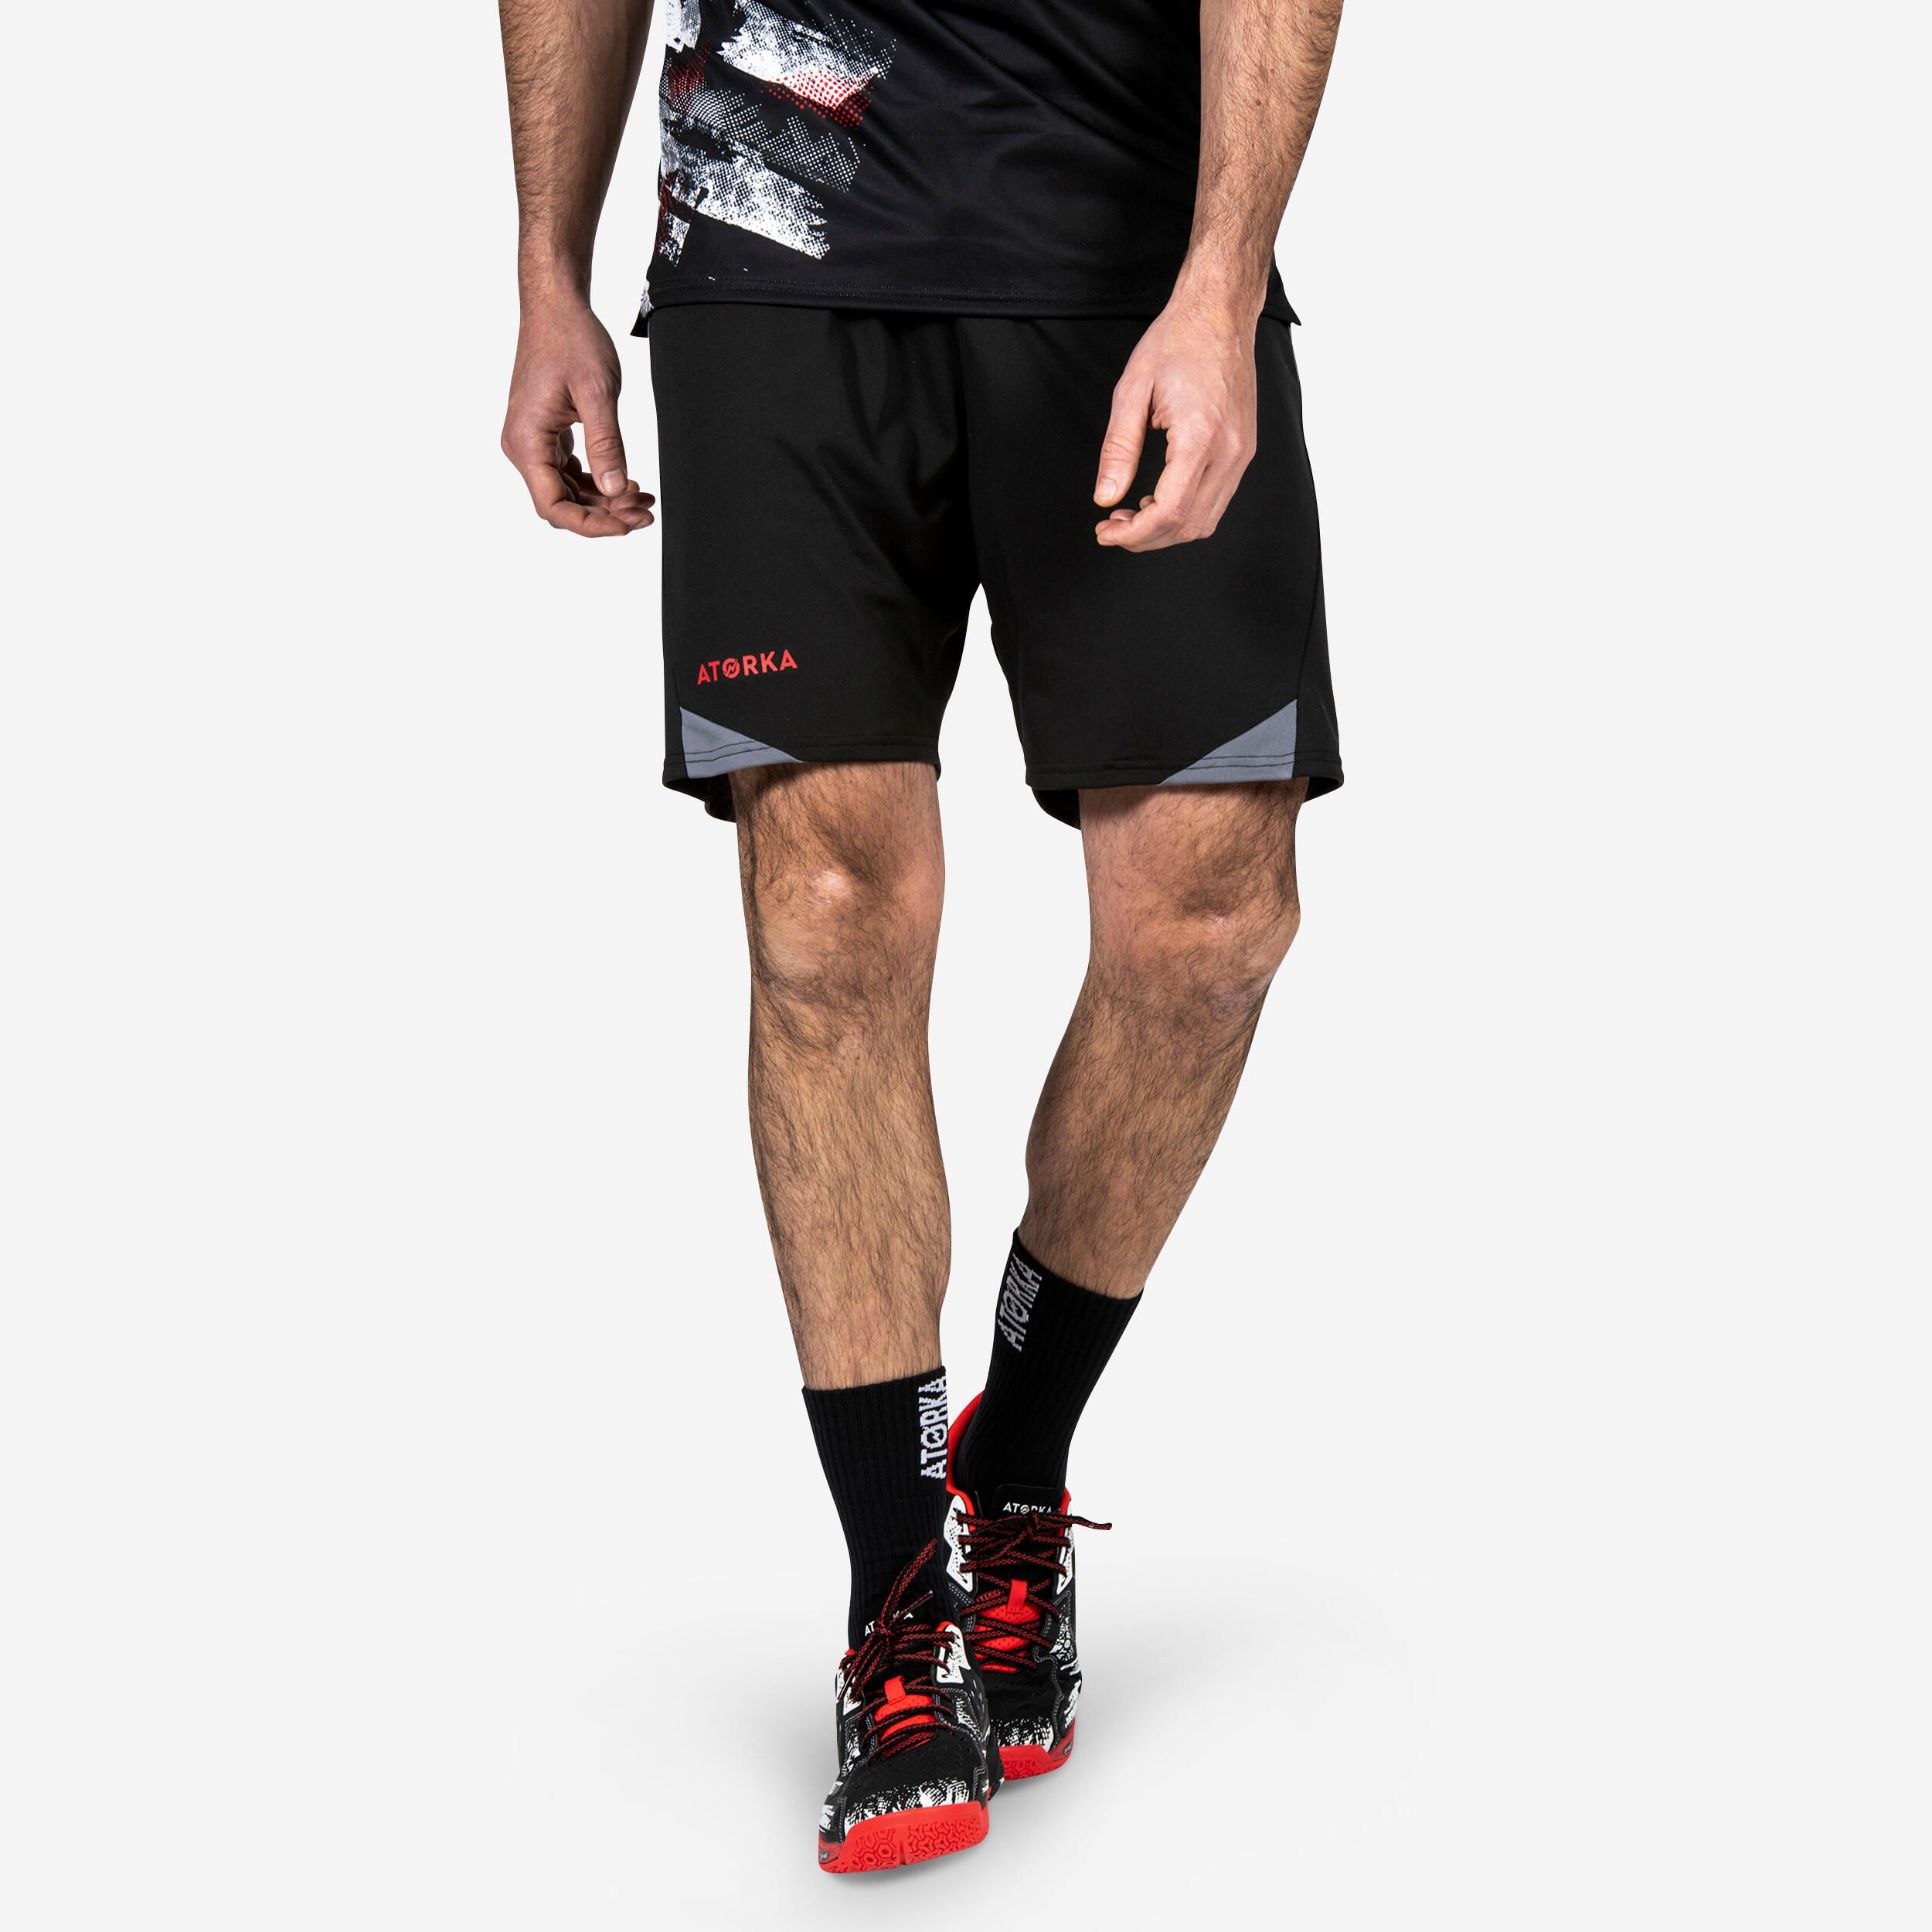 ATORKA H500 Handball Shorts - Black/Grey